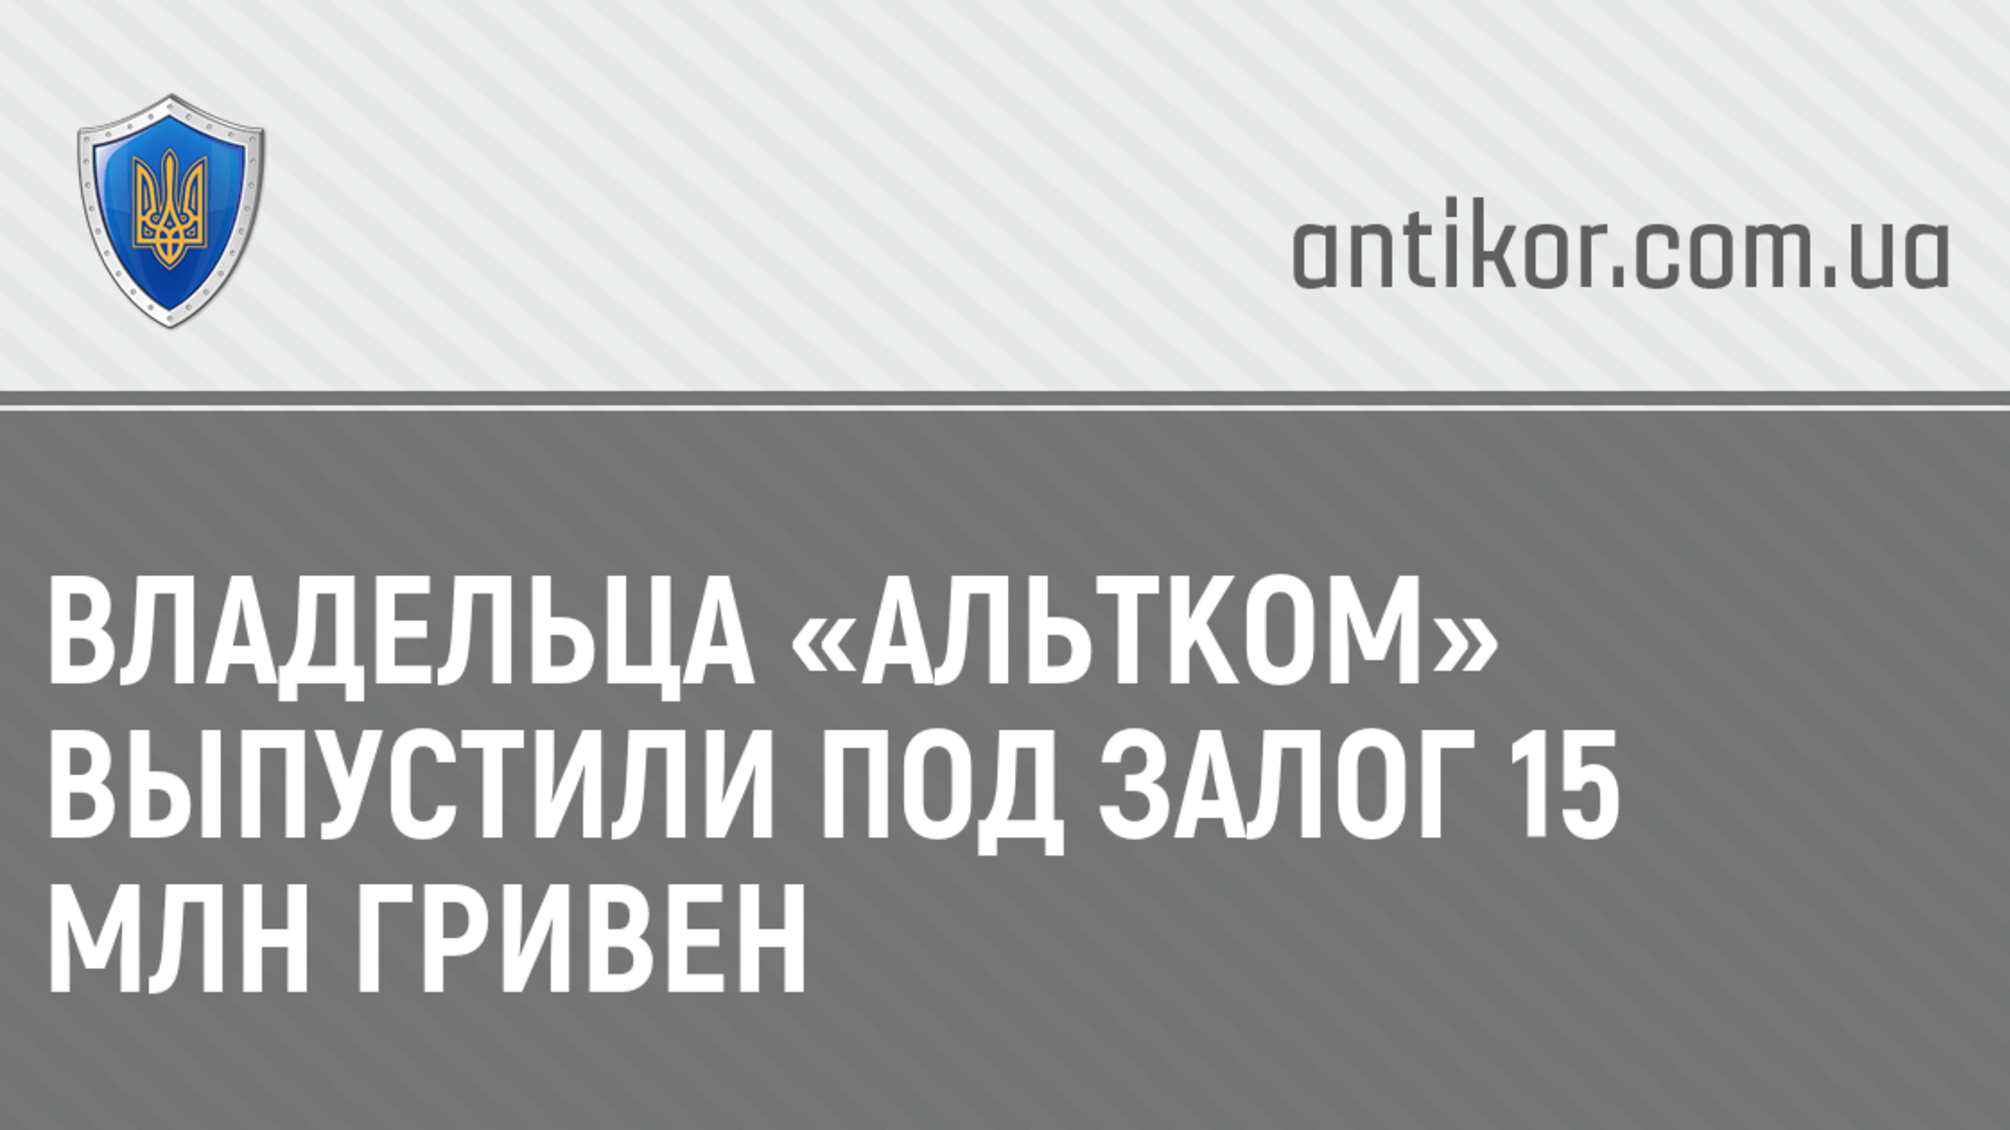 Владельца «Альтком» выпустили под залог 15 млн гривен